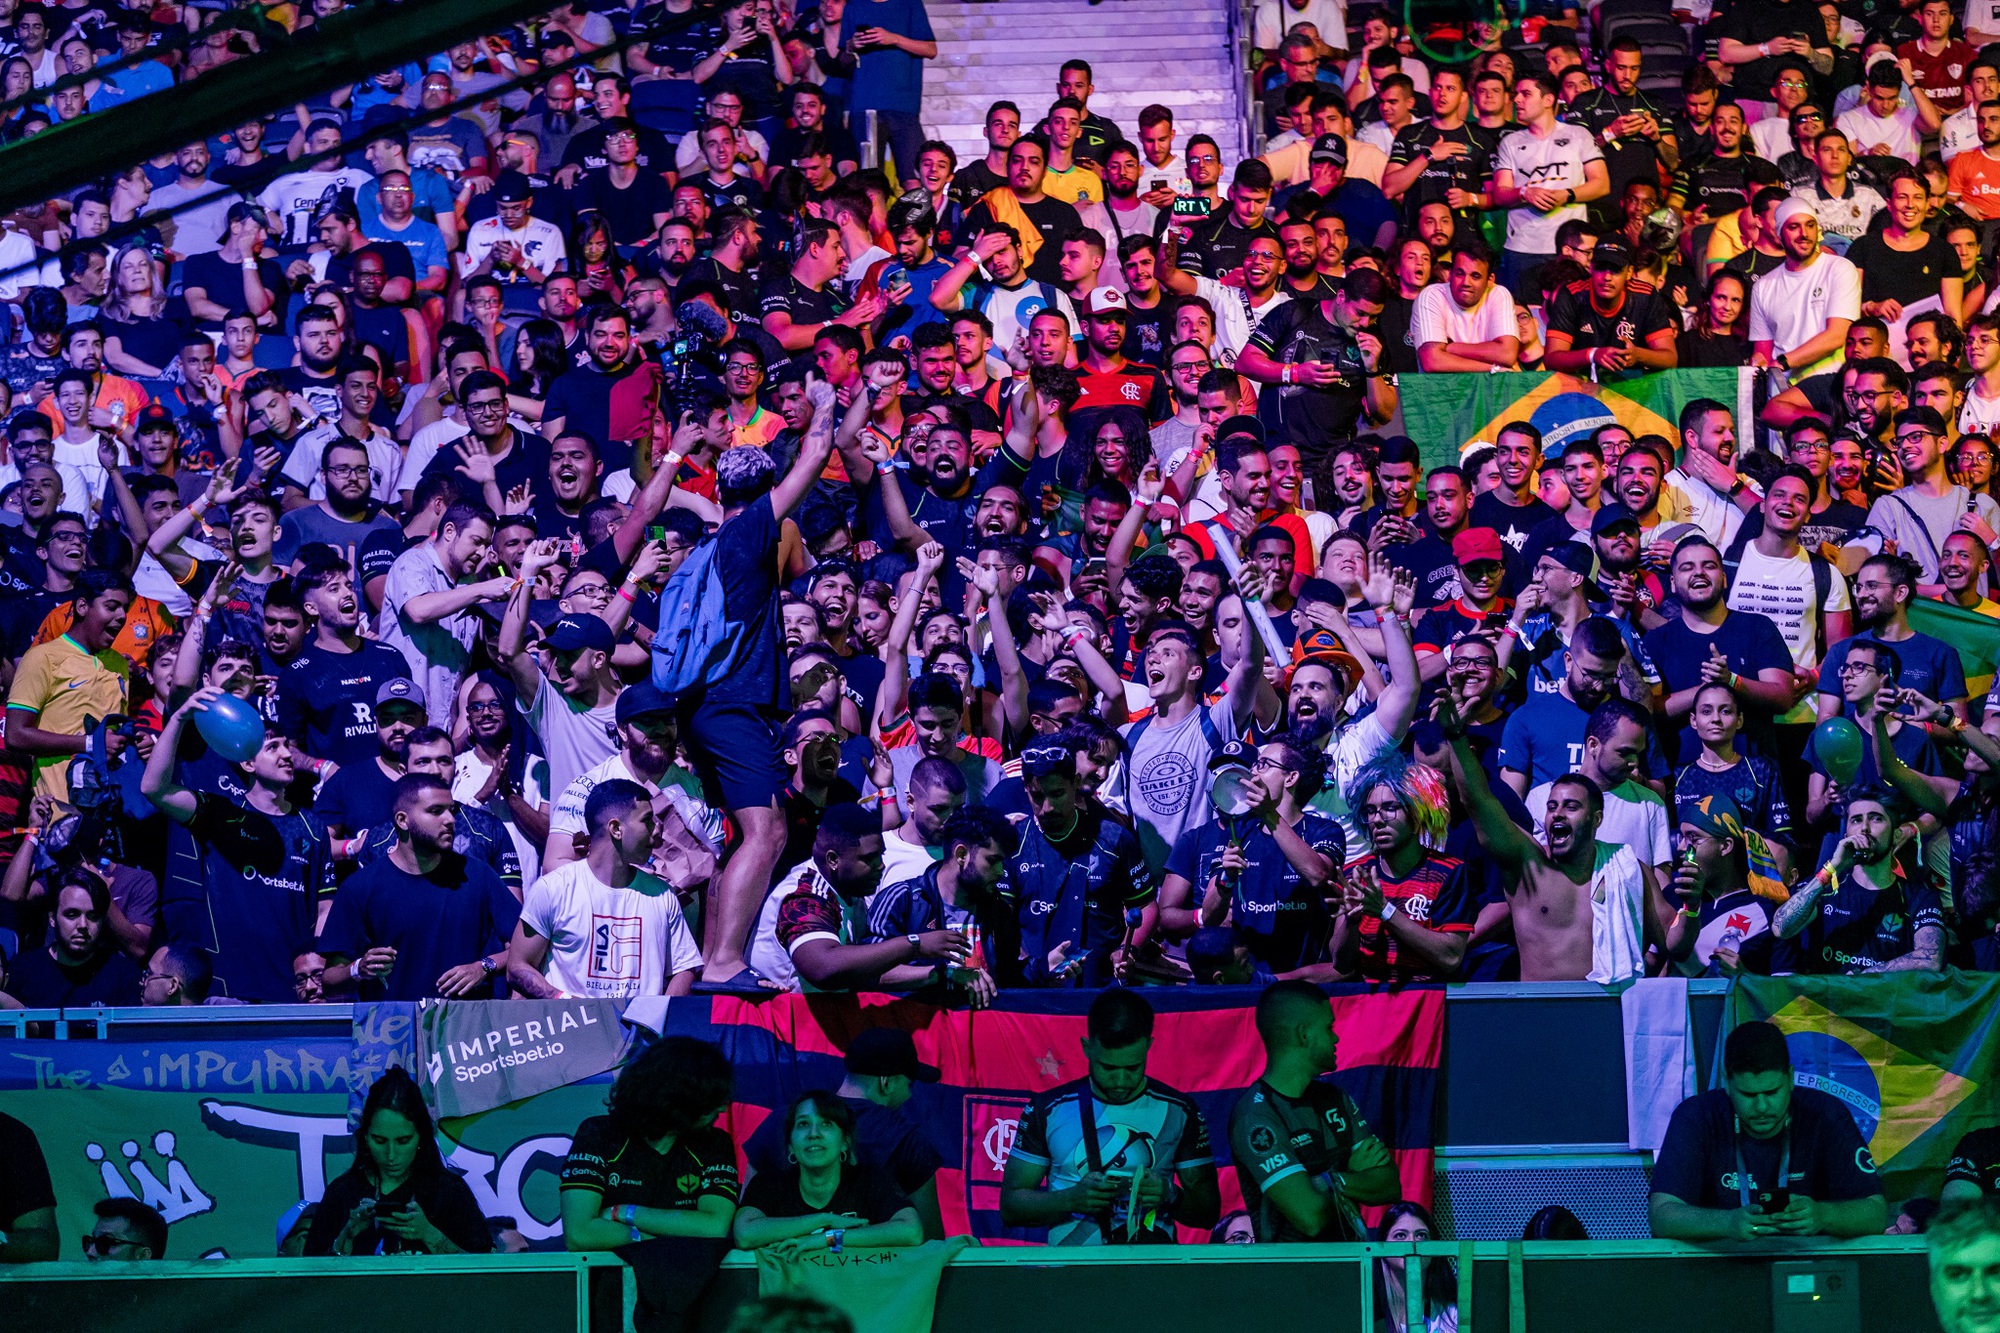 Ở Brazil, người hâm mộ eSports đã biến việc cổ vũ thành một loại hình nghệ thuật đỉnh cao - Ảnh 5.